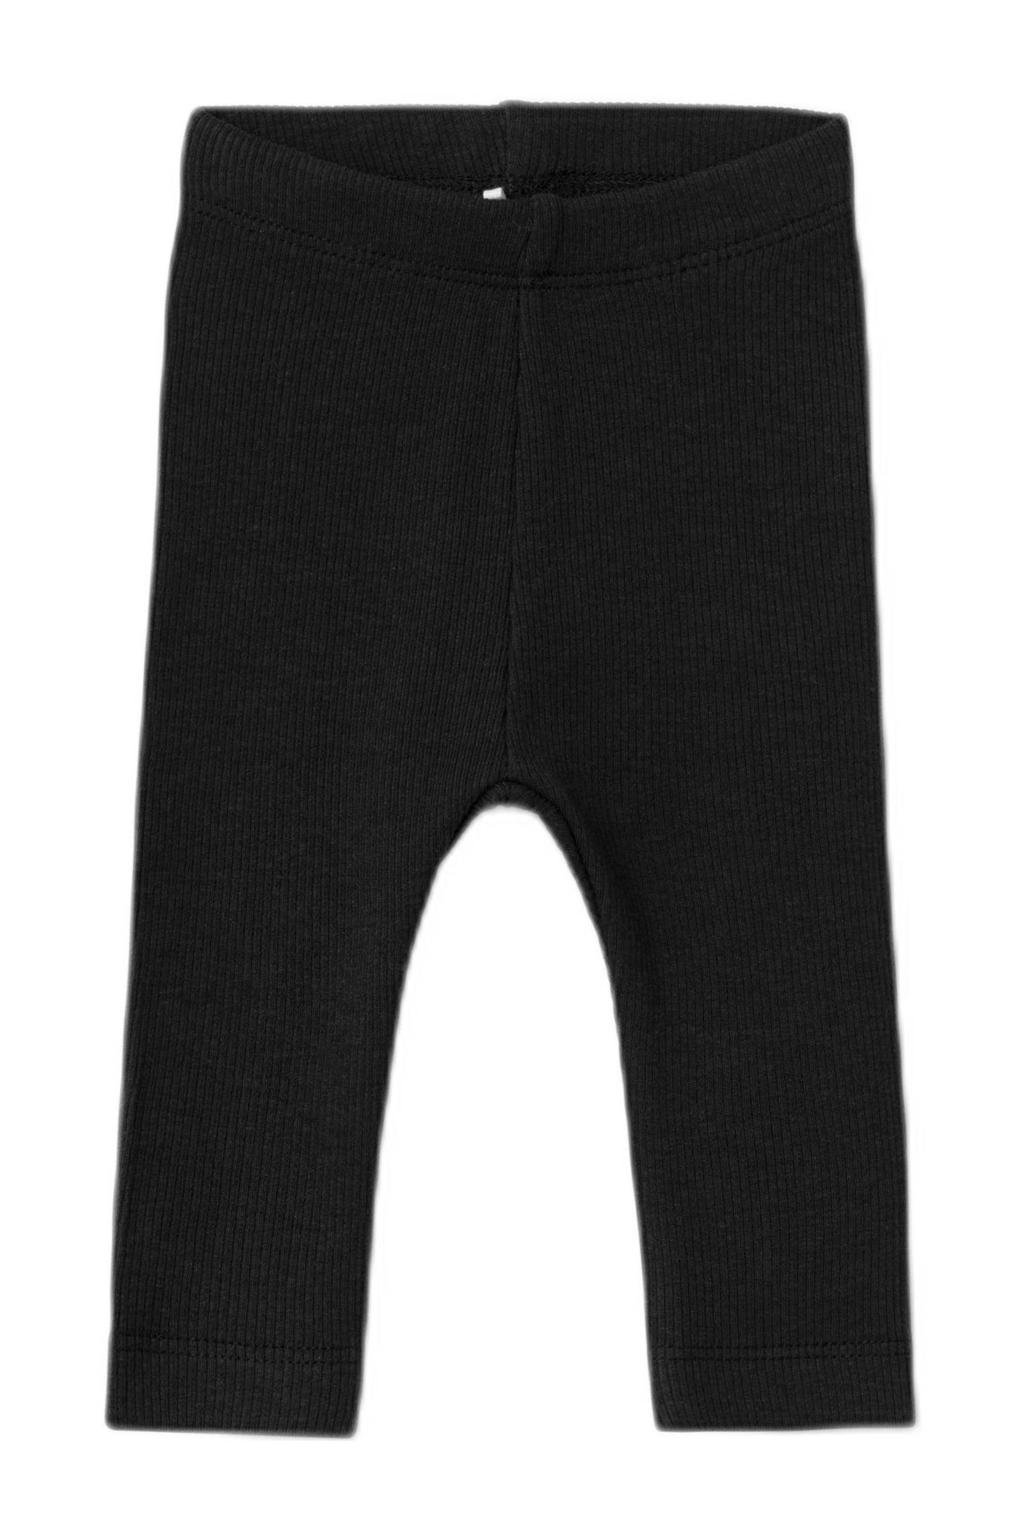 Zwarte NAME IT BABY baby broek van duurzaam stretchkatoen met elastische tailleband